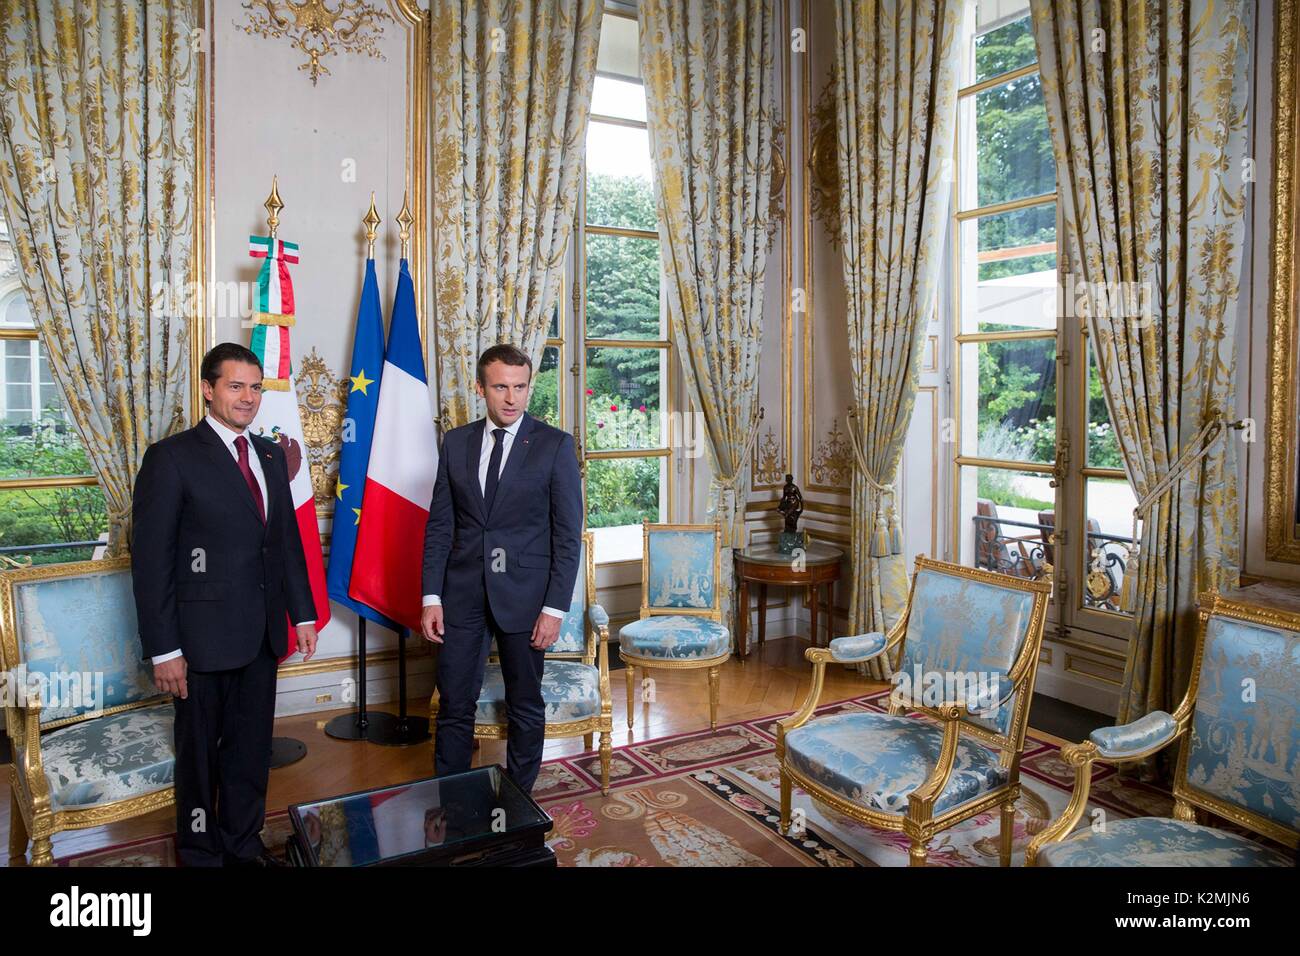 Le Président mexicain Enrique Pena Nieto, gauche, lors d'une réunion bilatérale avec le président français, Emmanuel Macron à l'Elysée le 7 juillet 2017 à Paris, France. Banque D'Images